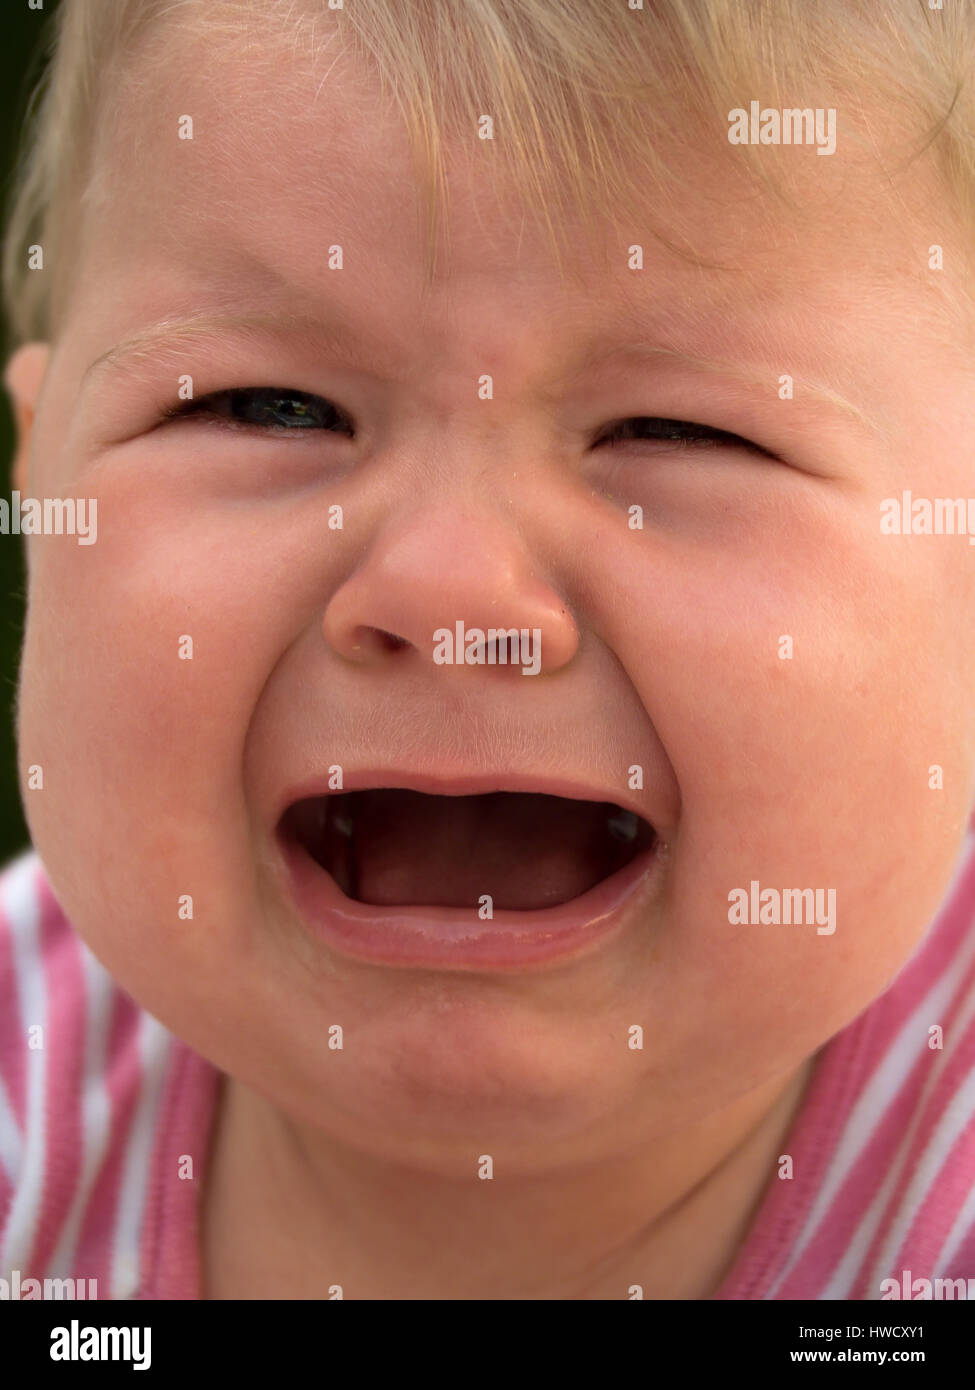 Crying baby lies on a meadow and is sad, Weinendes Baby liegt auf einer Wiese und ist traurig Stock Photo